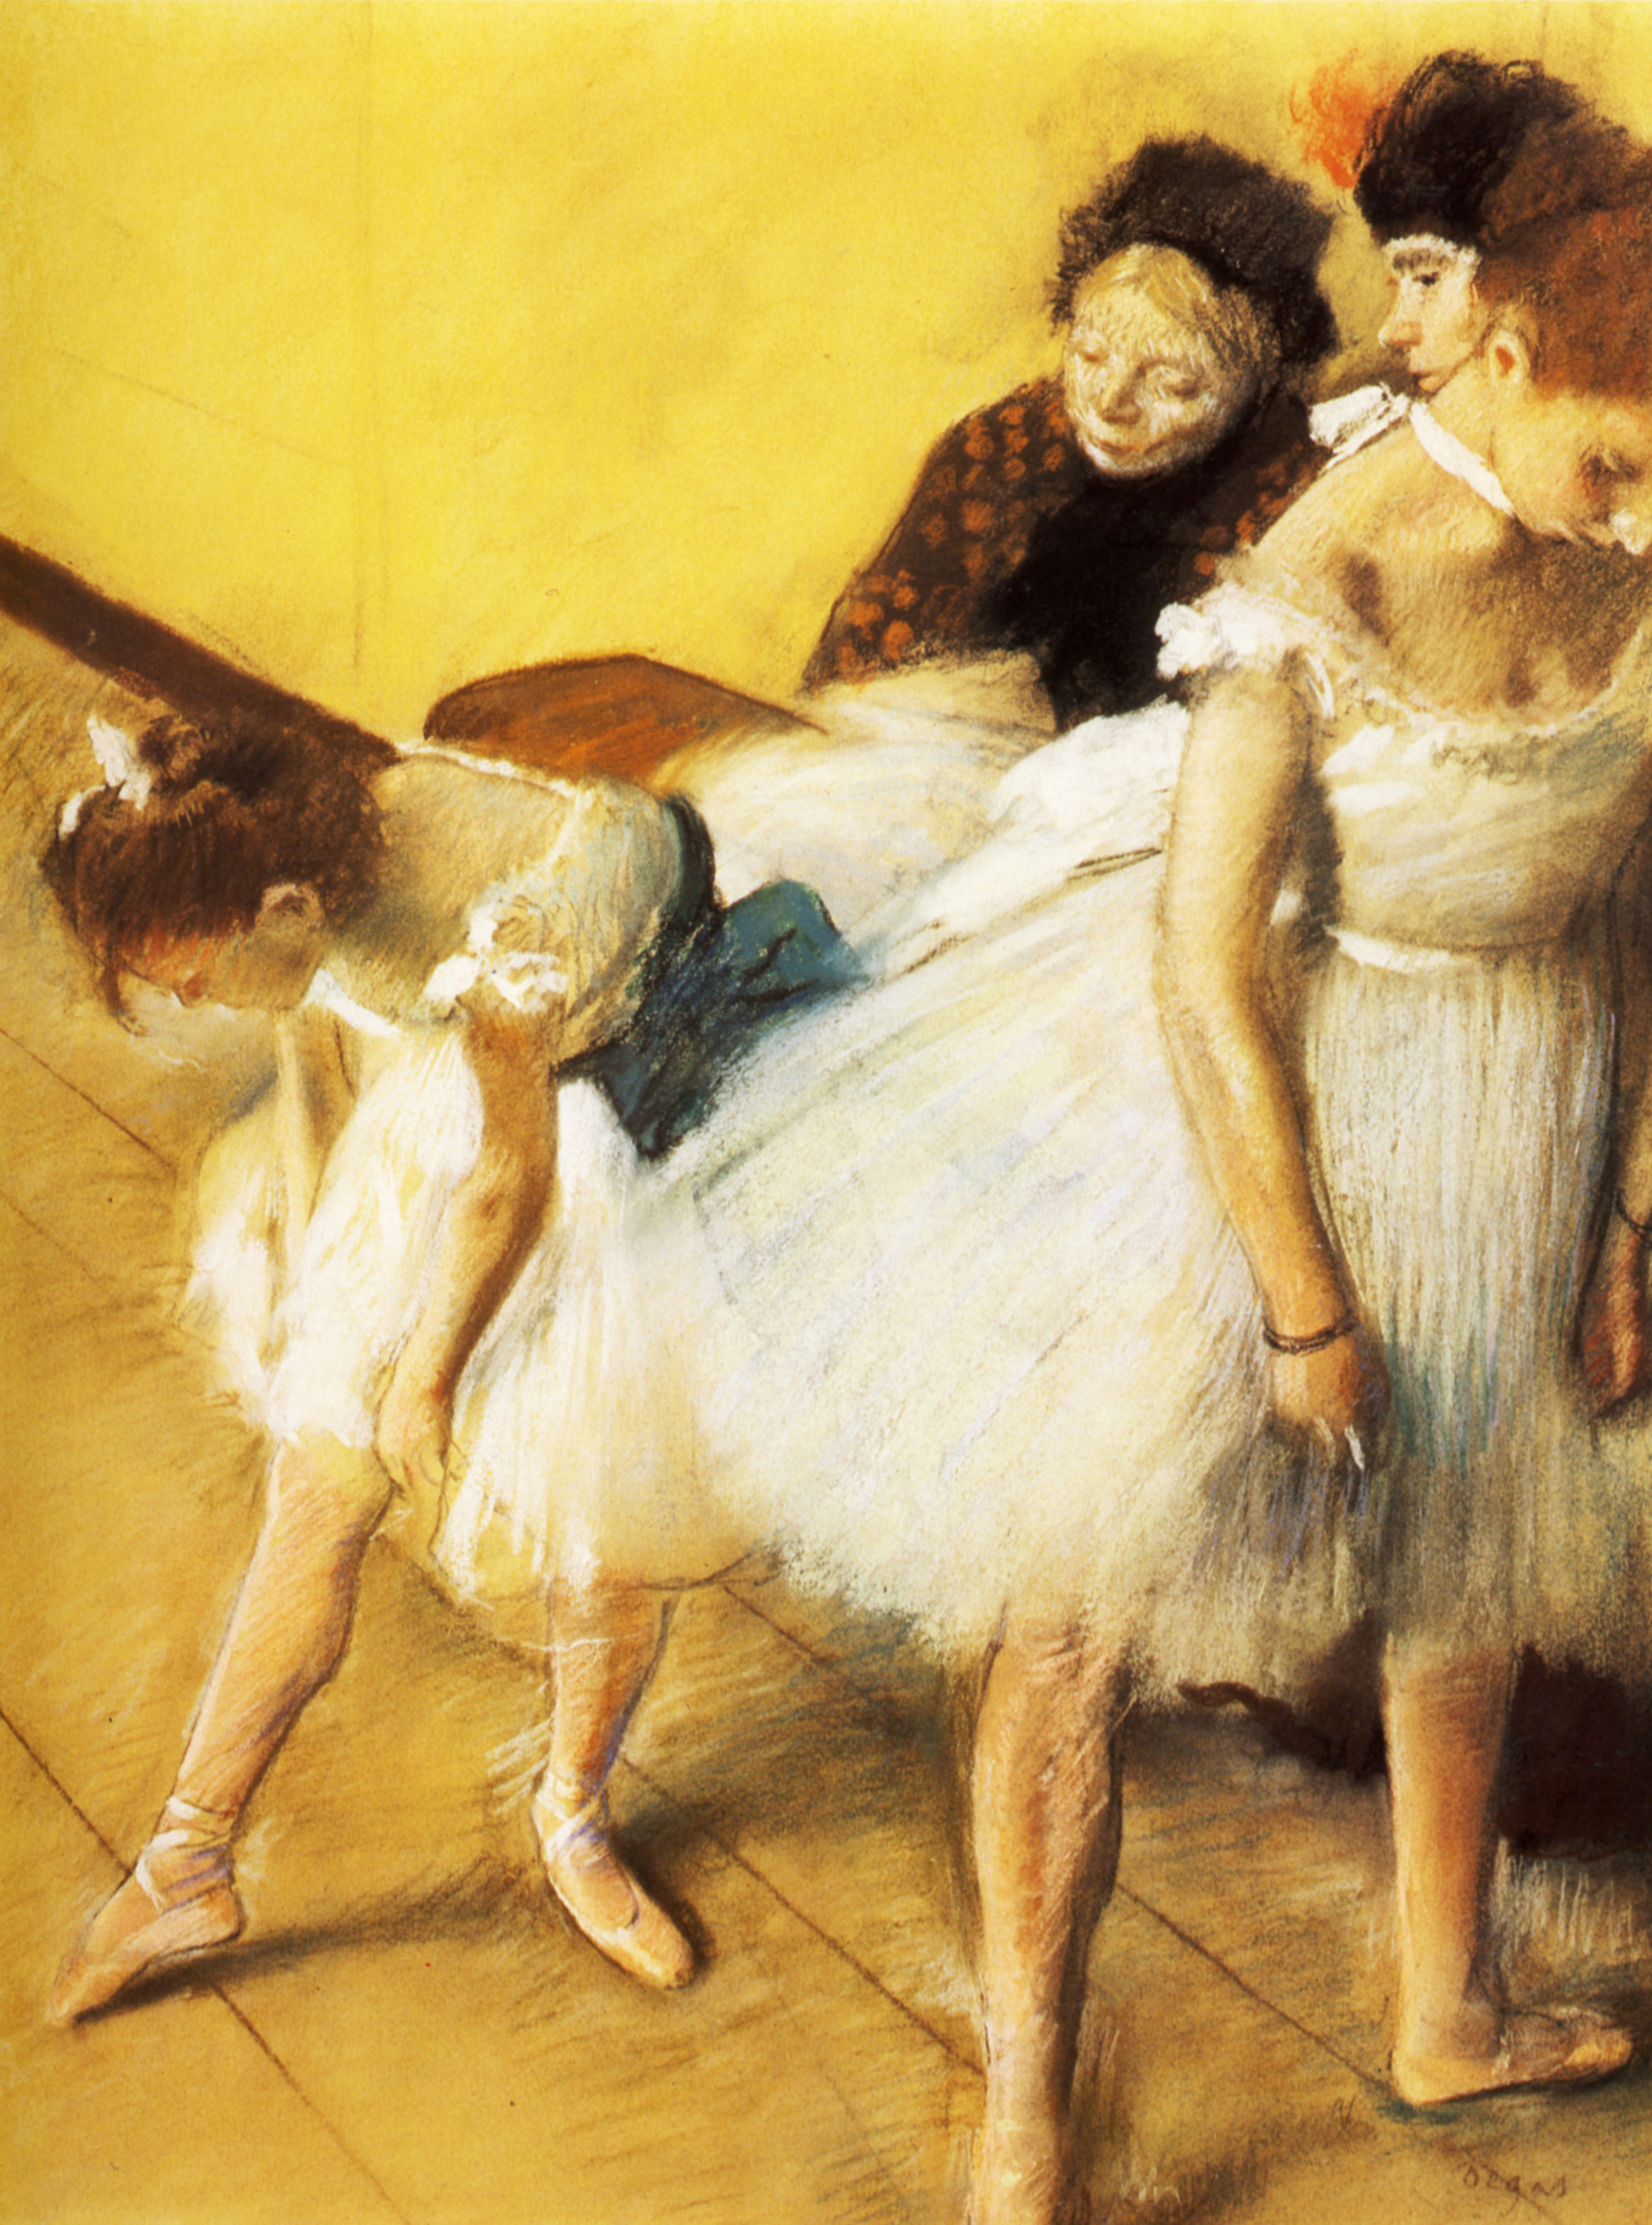 Экзамен по танцам by Edgar Degas - 1880 - 63.4 x 48.2 см 